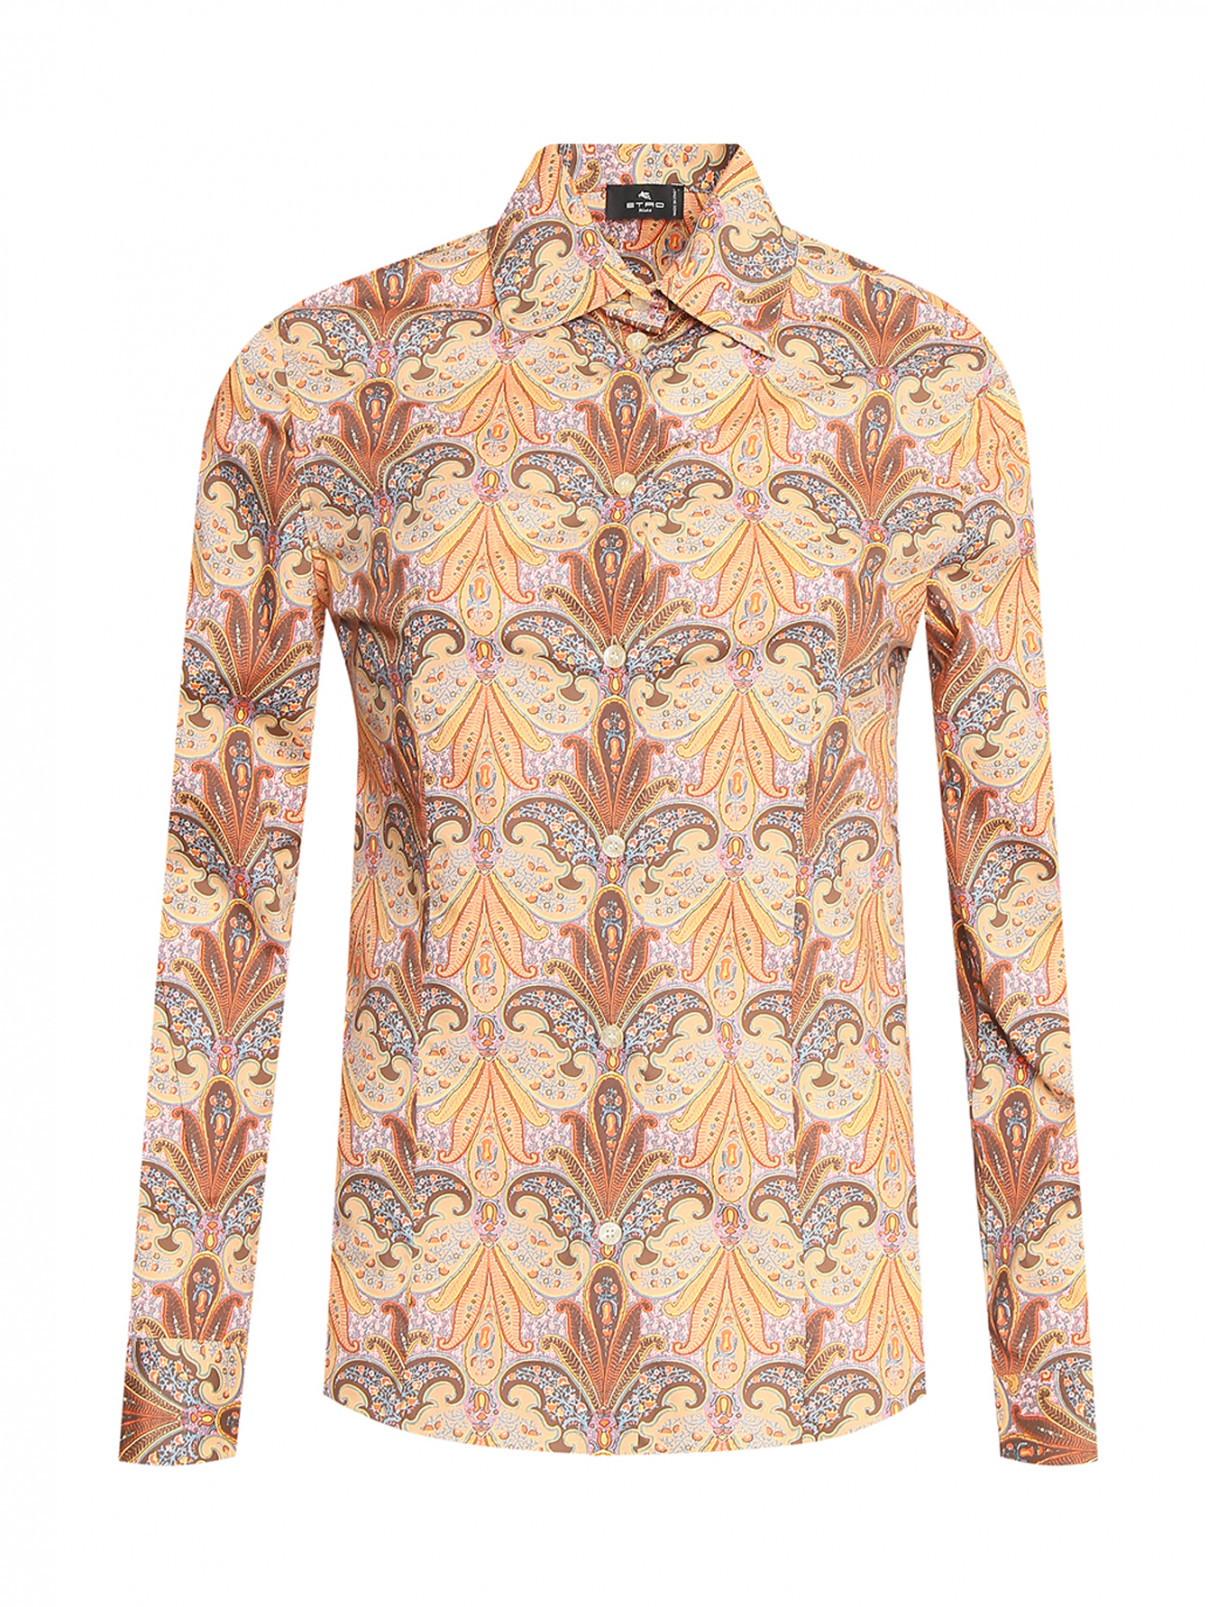 Блуза из хлопка с узором Etro  –  Общий вид  – Цвет:  Оранжевый